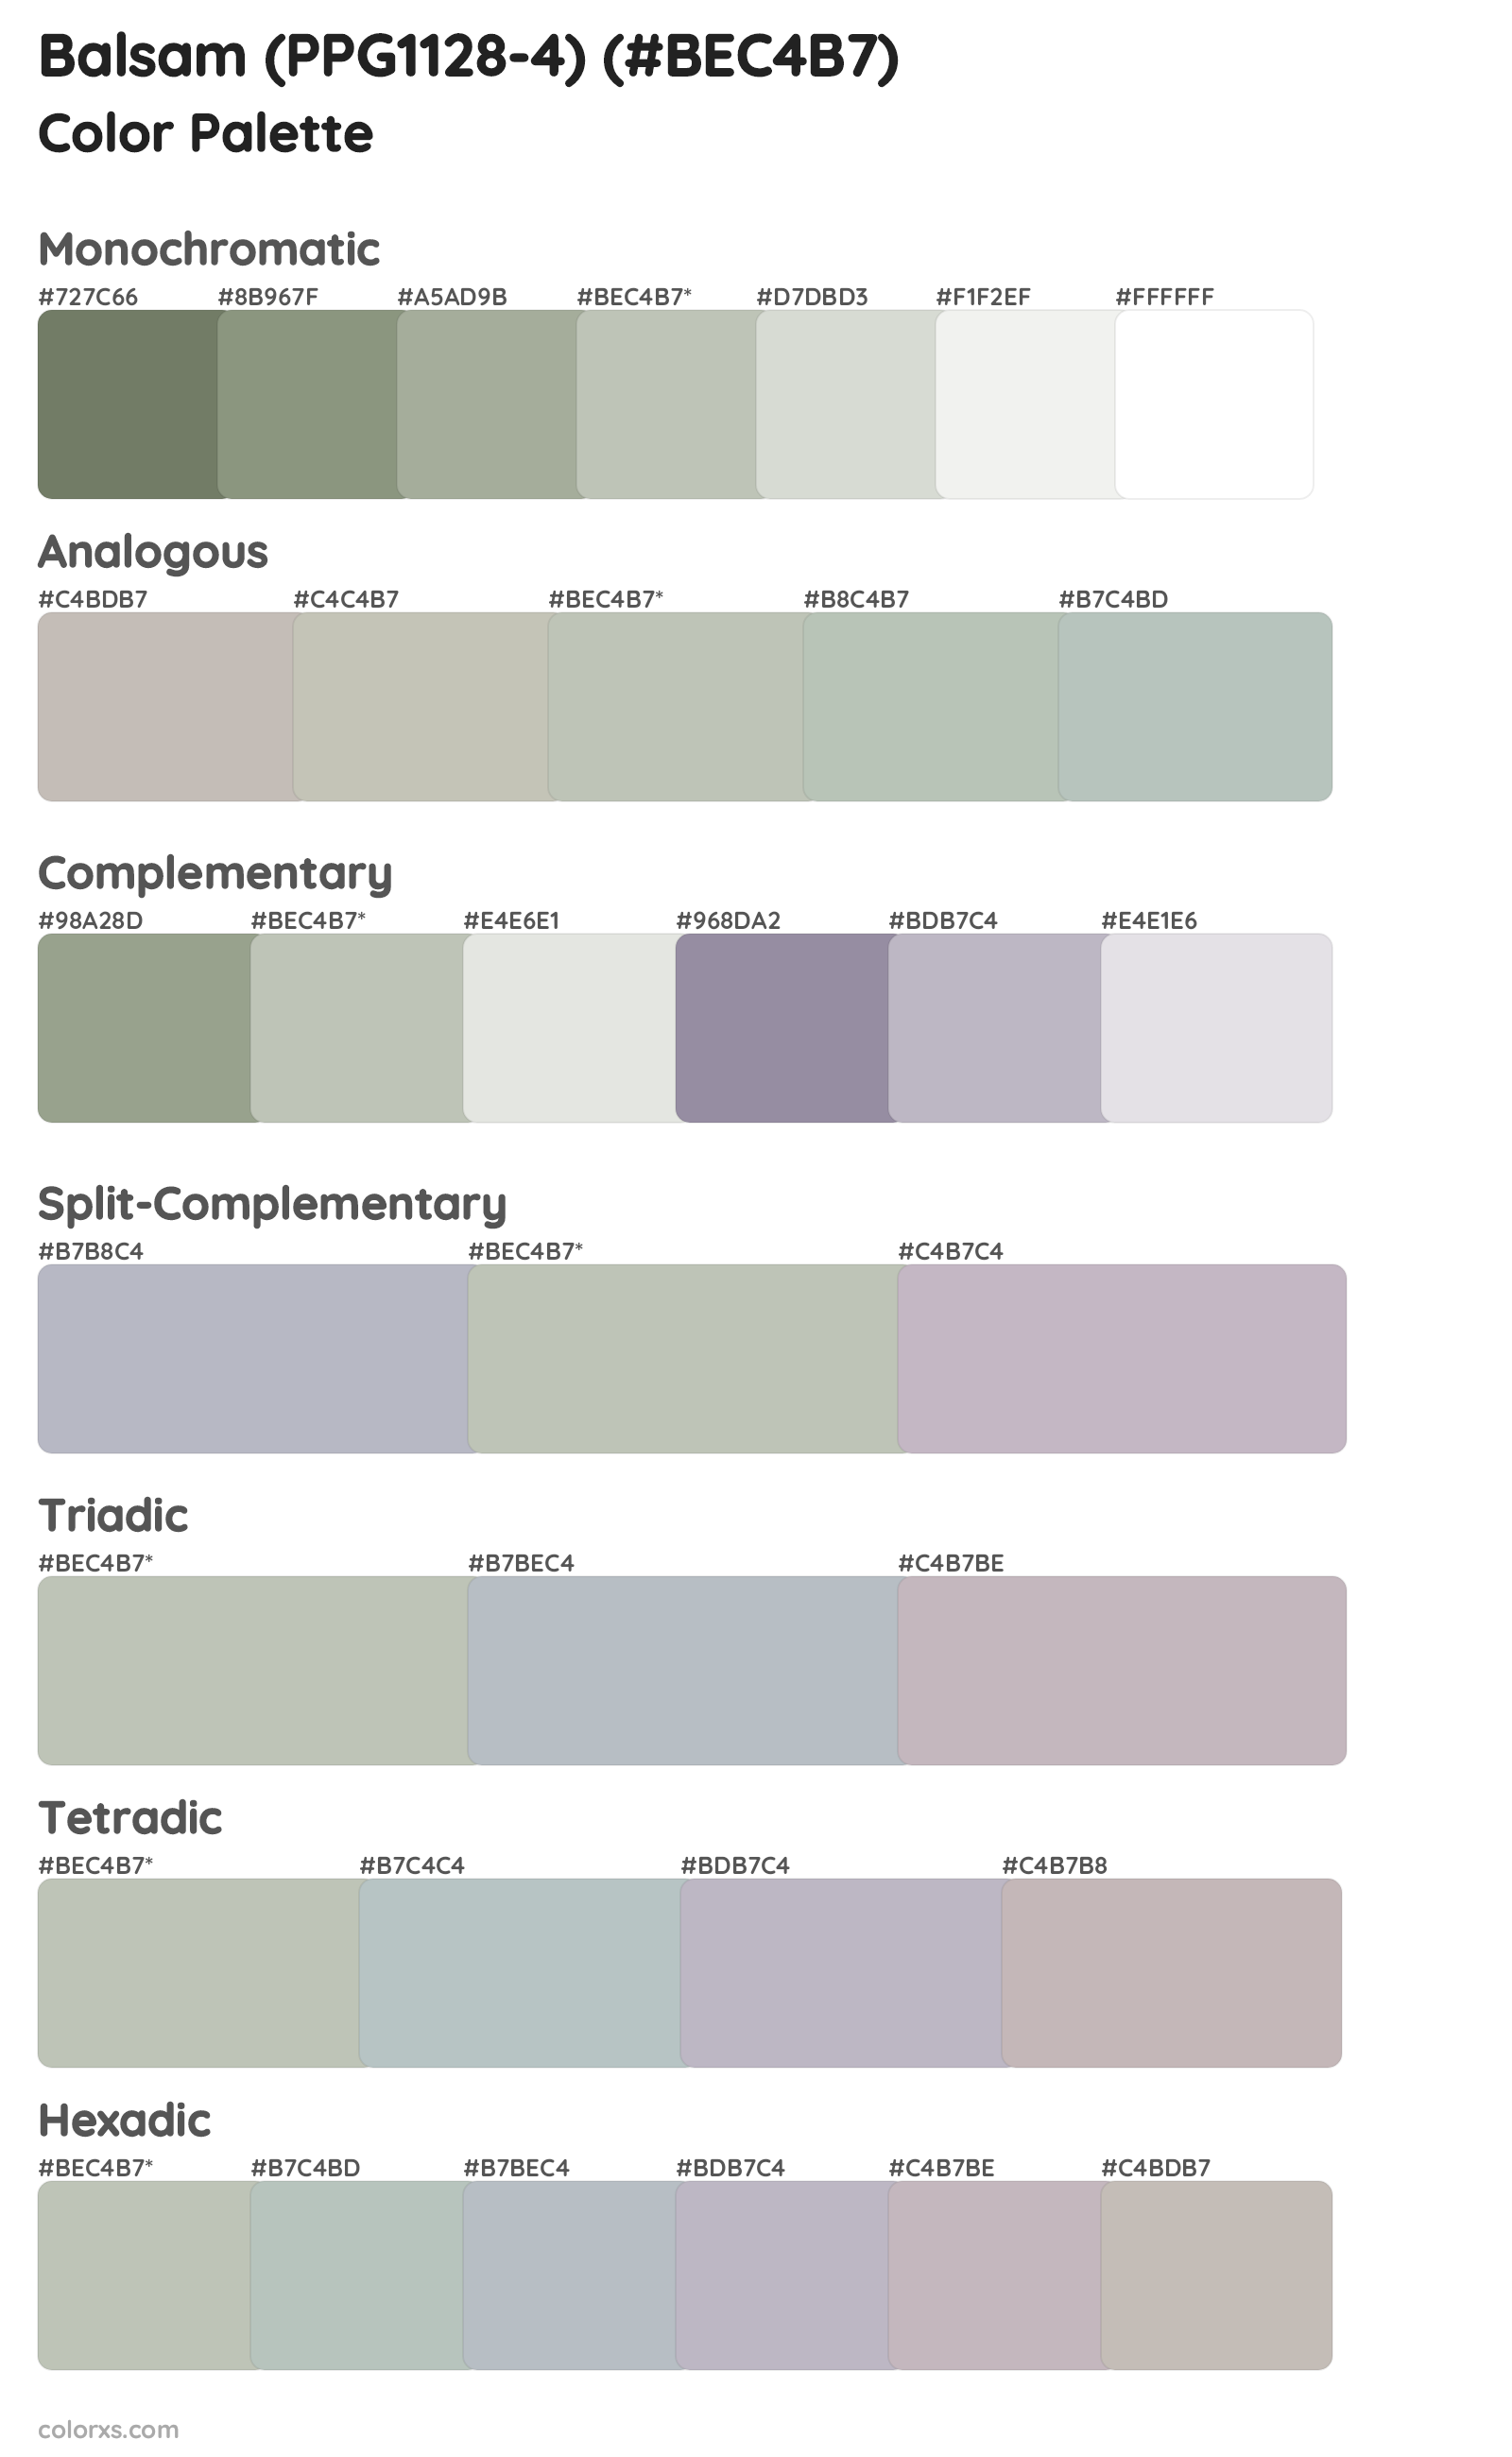 Balsam (PPG1128-4) Color Scheme Palettes